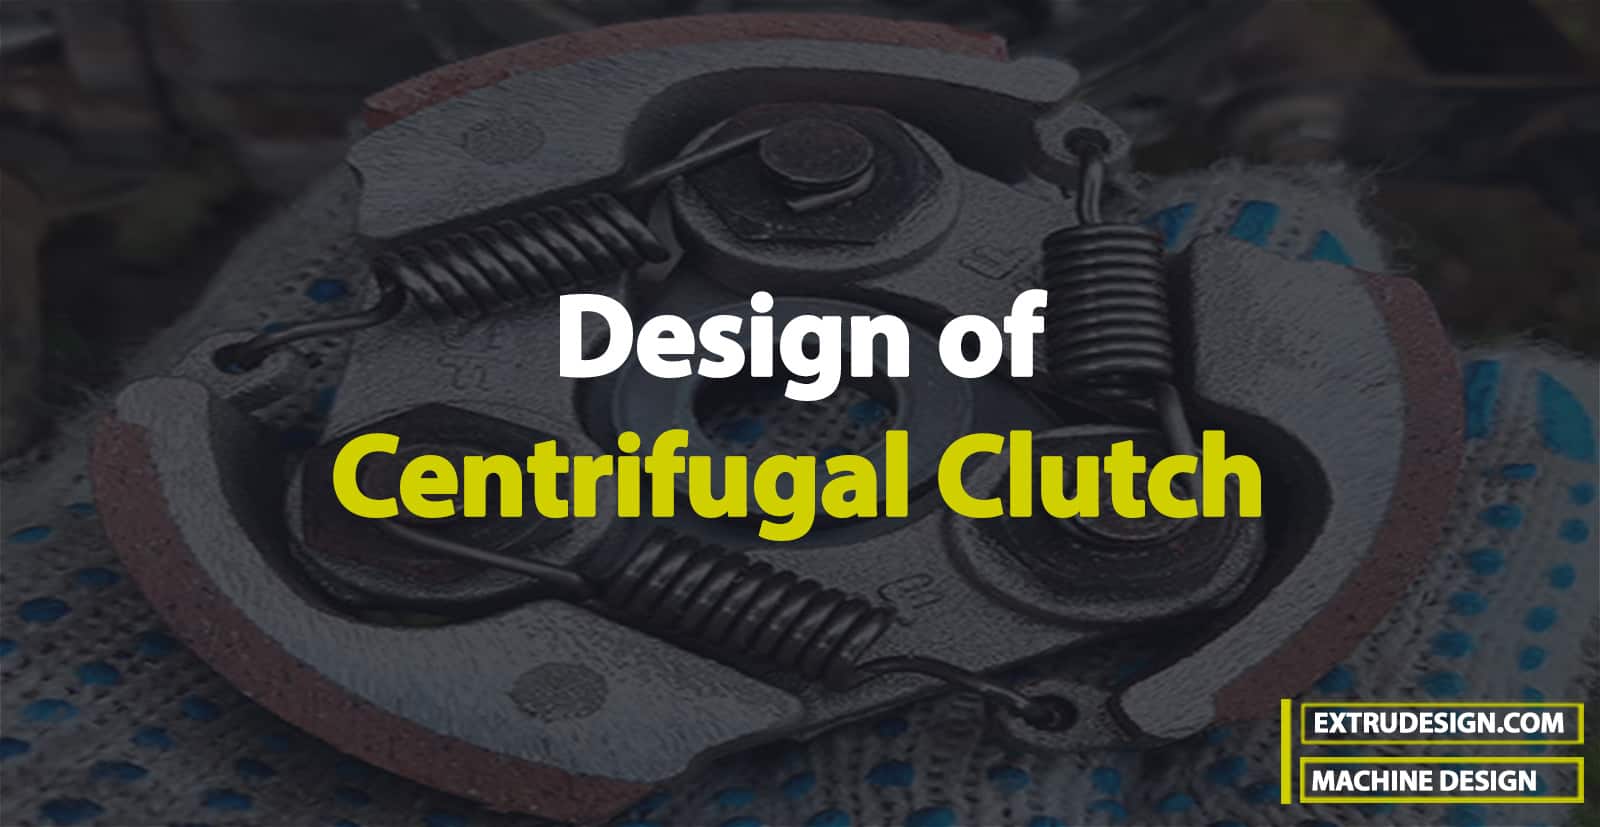 Design of a Centrifugal Clutch